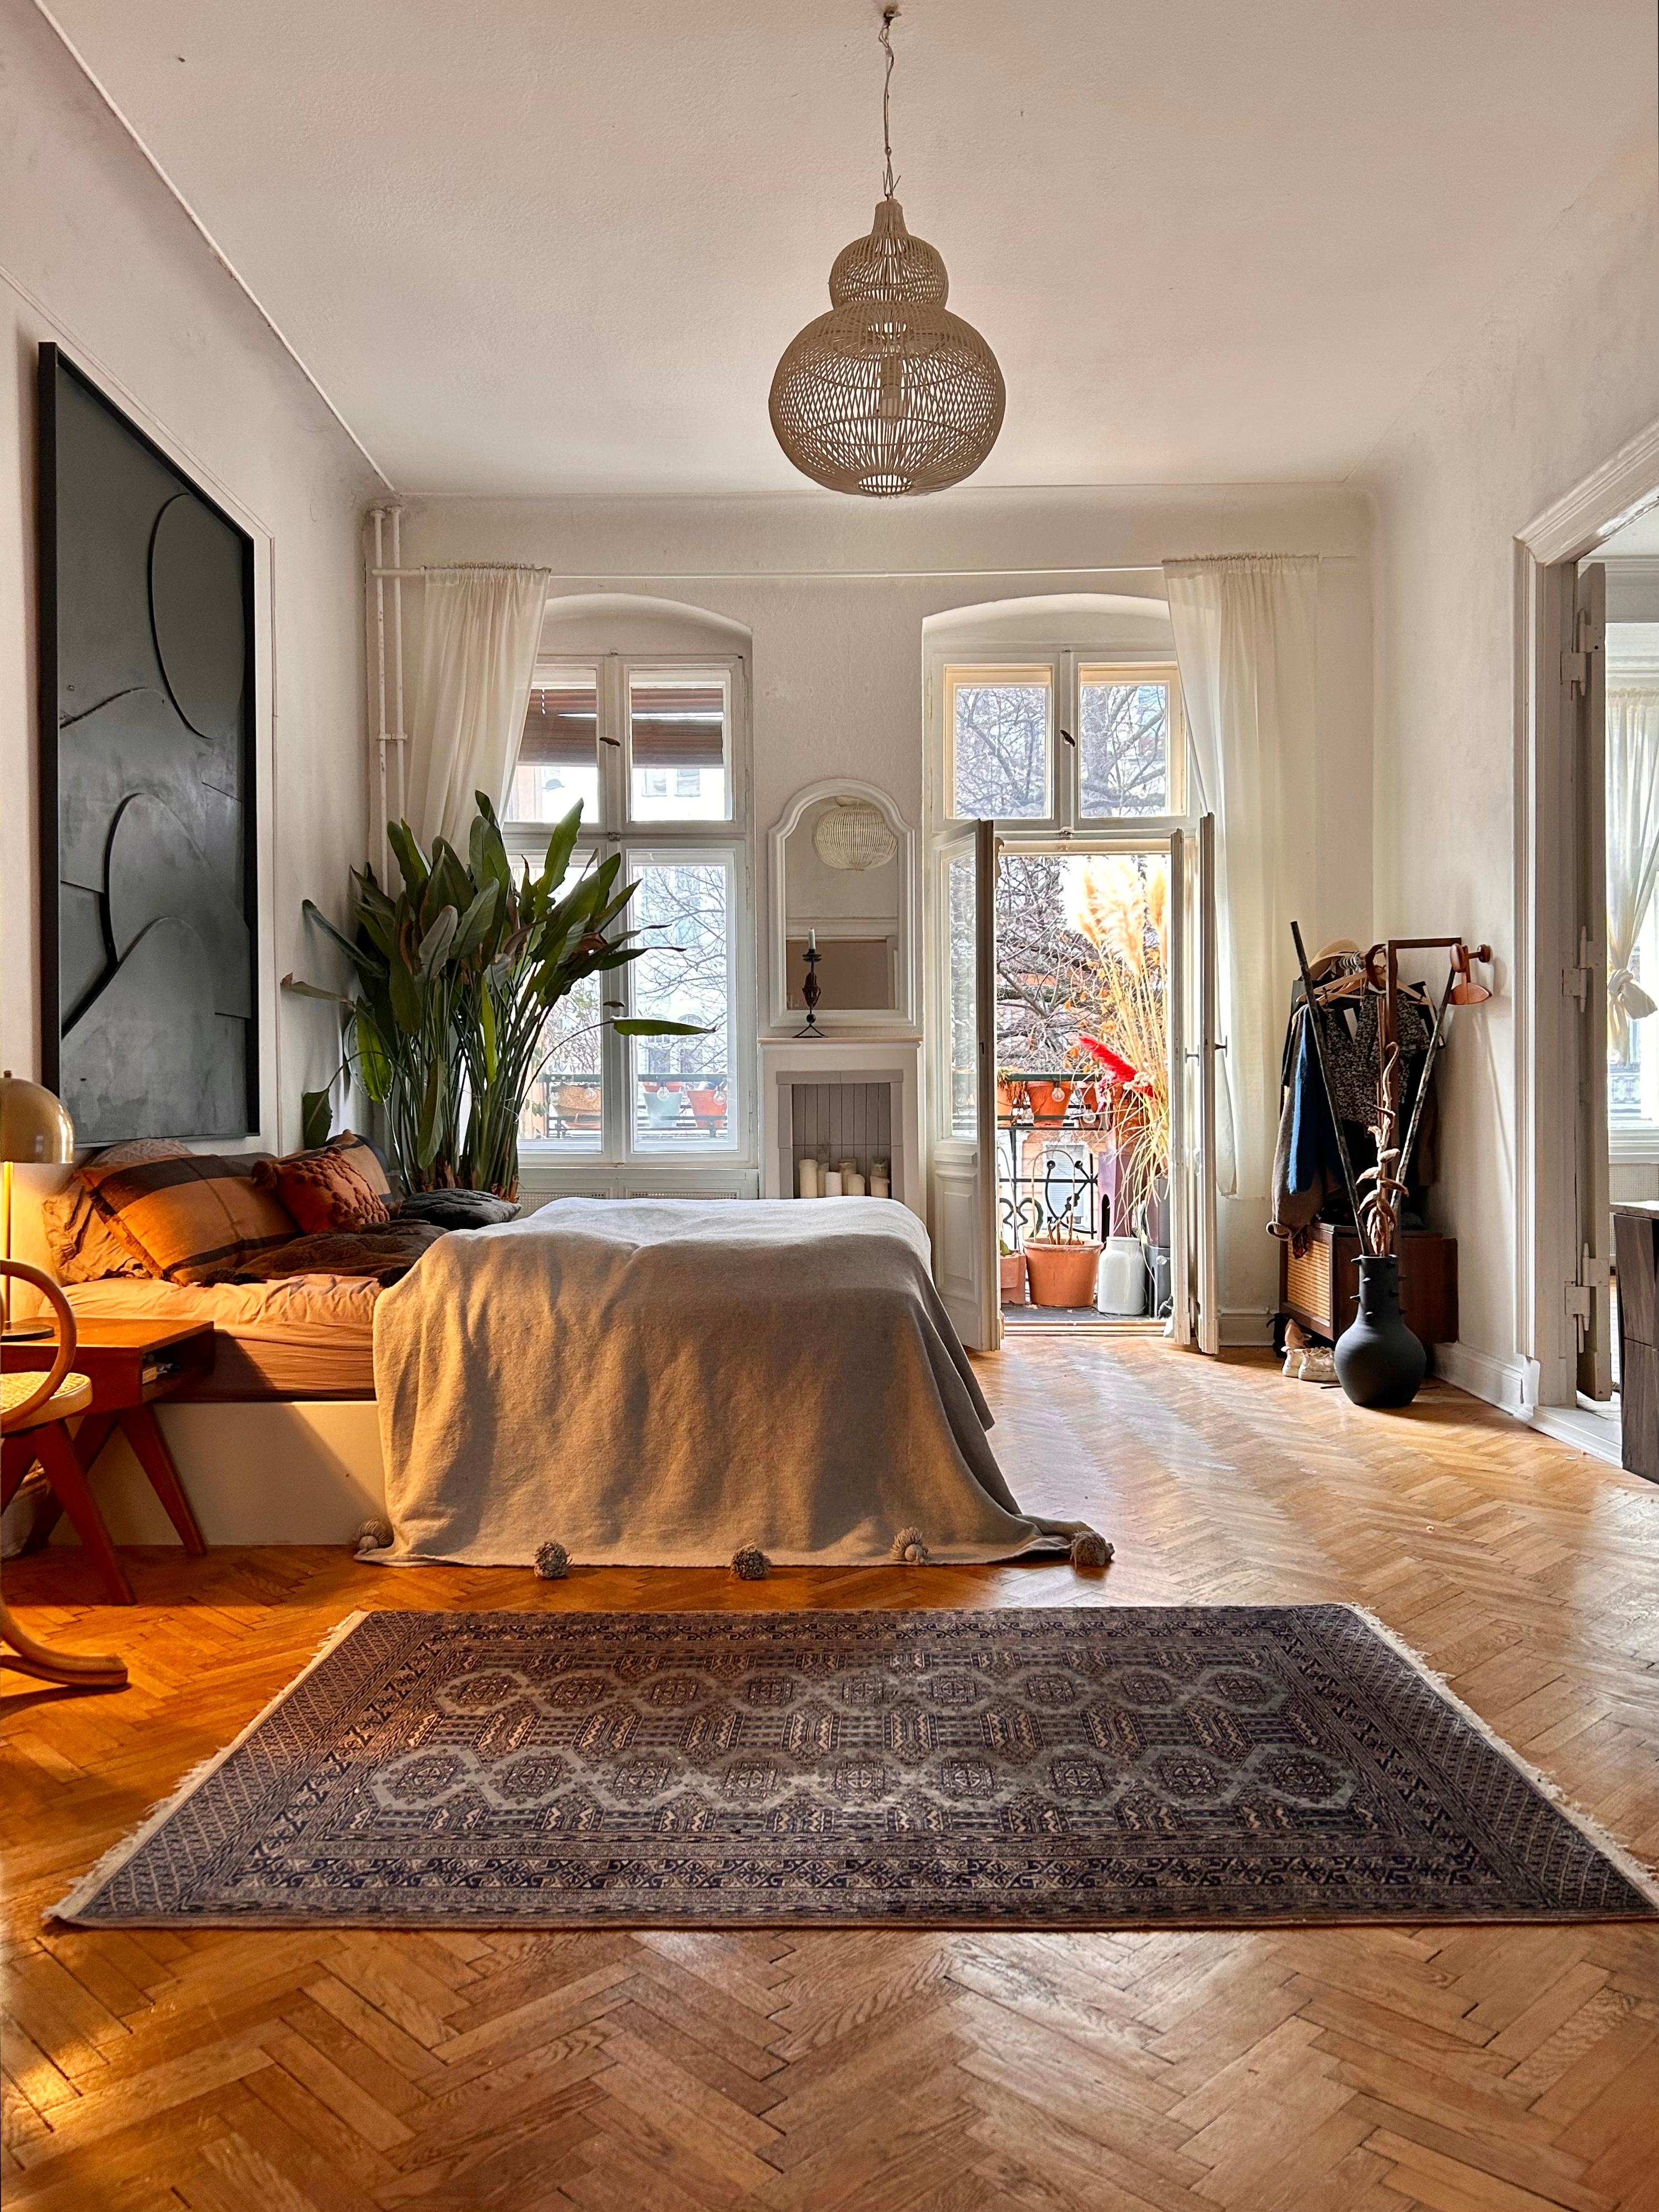 ♥️ #bedroom #bett #schlafzimmer #kunst #holzboden #altbau #teppich